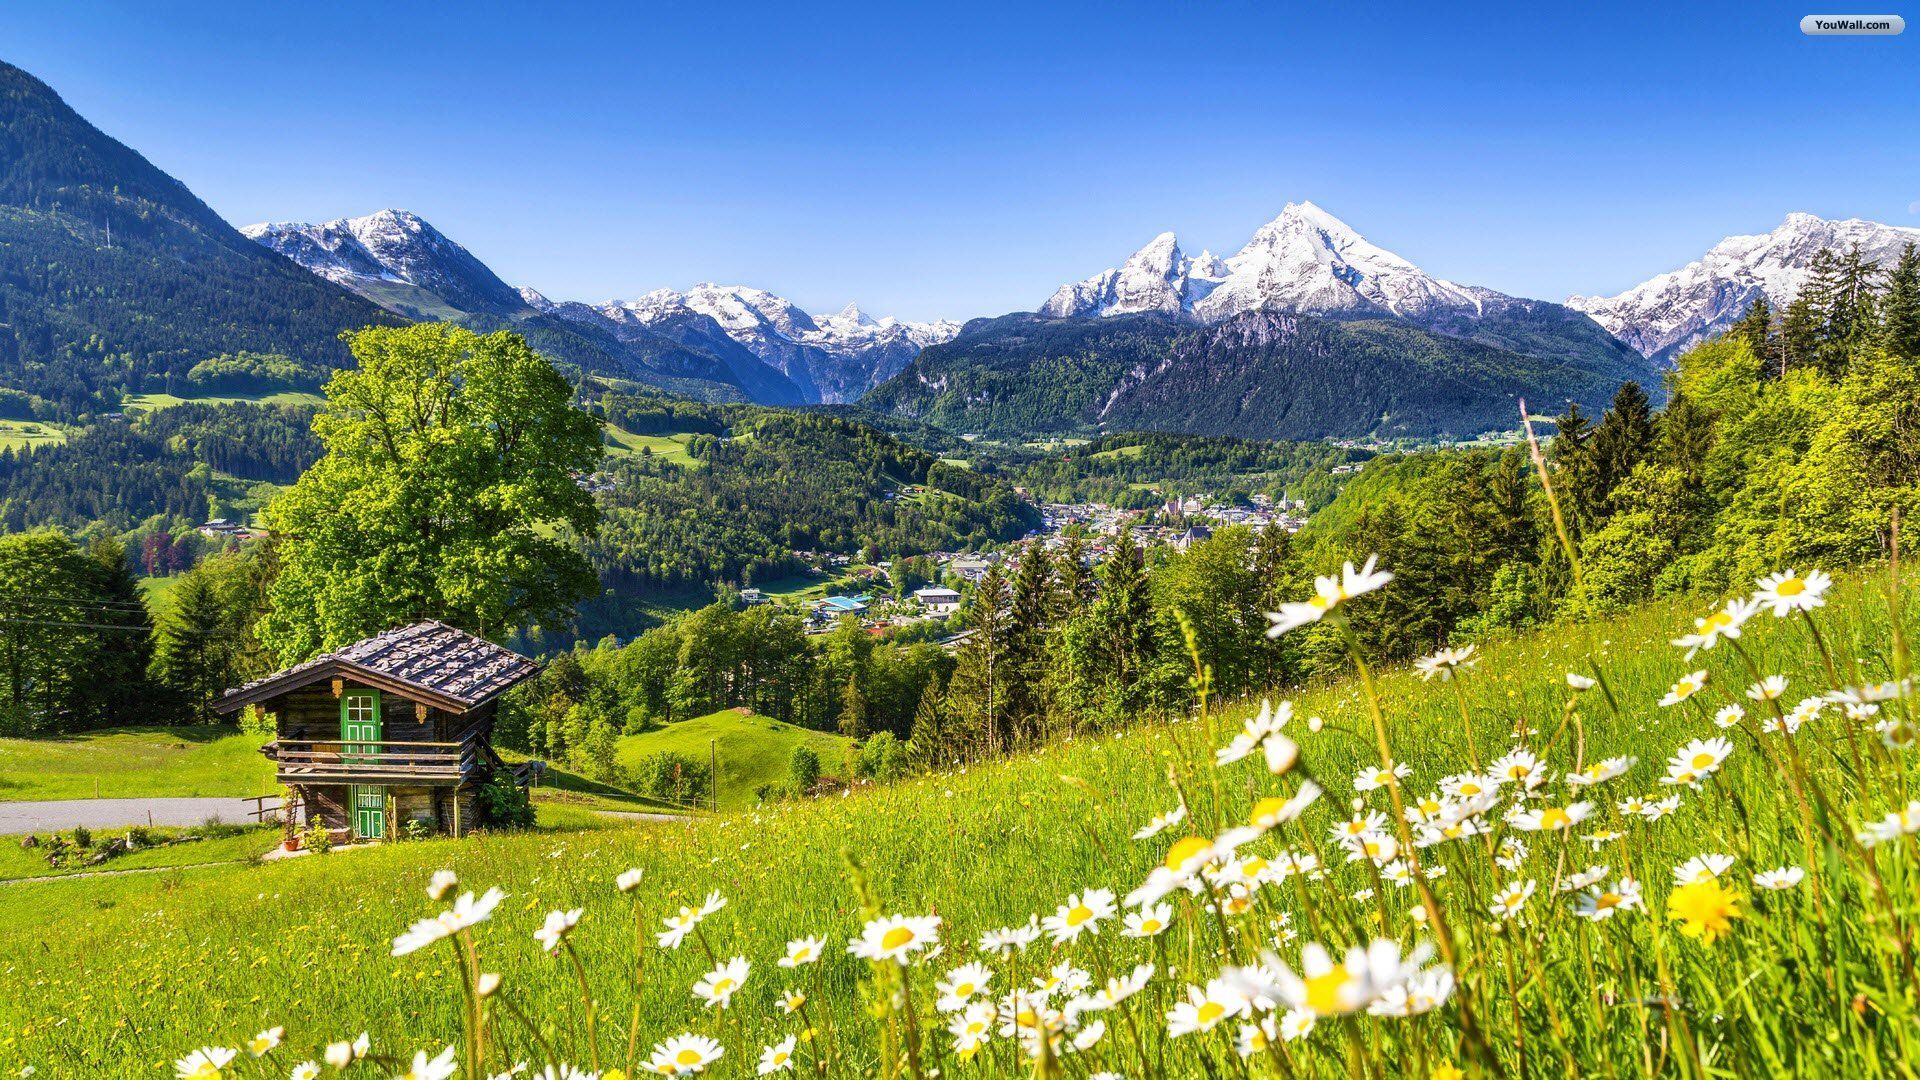 YouWall - Switzerland Landscape Wallpaper - wallpaper,wallpapers ...